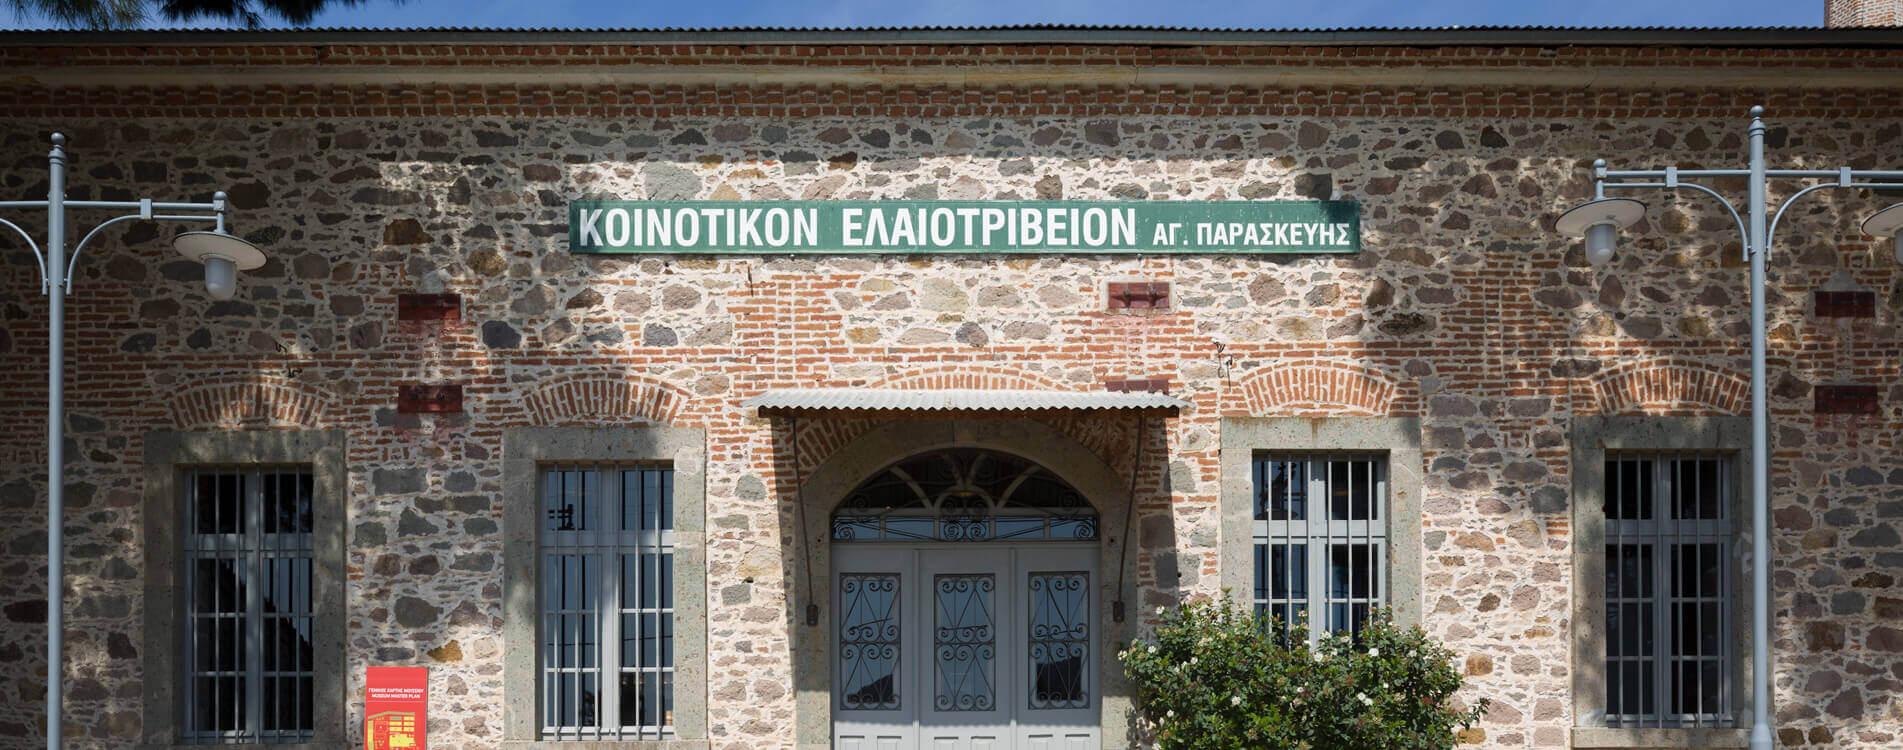 Μουσείο Βιομηχανικής Ελαιουργίας Λέσβου | Piraeus Bank Blog